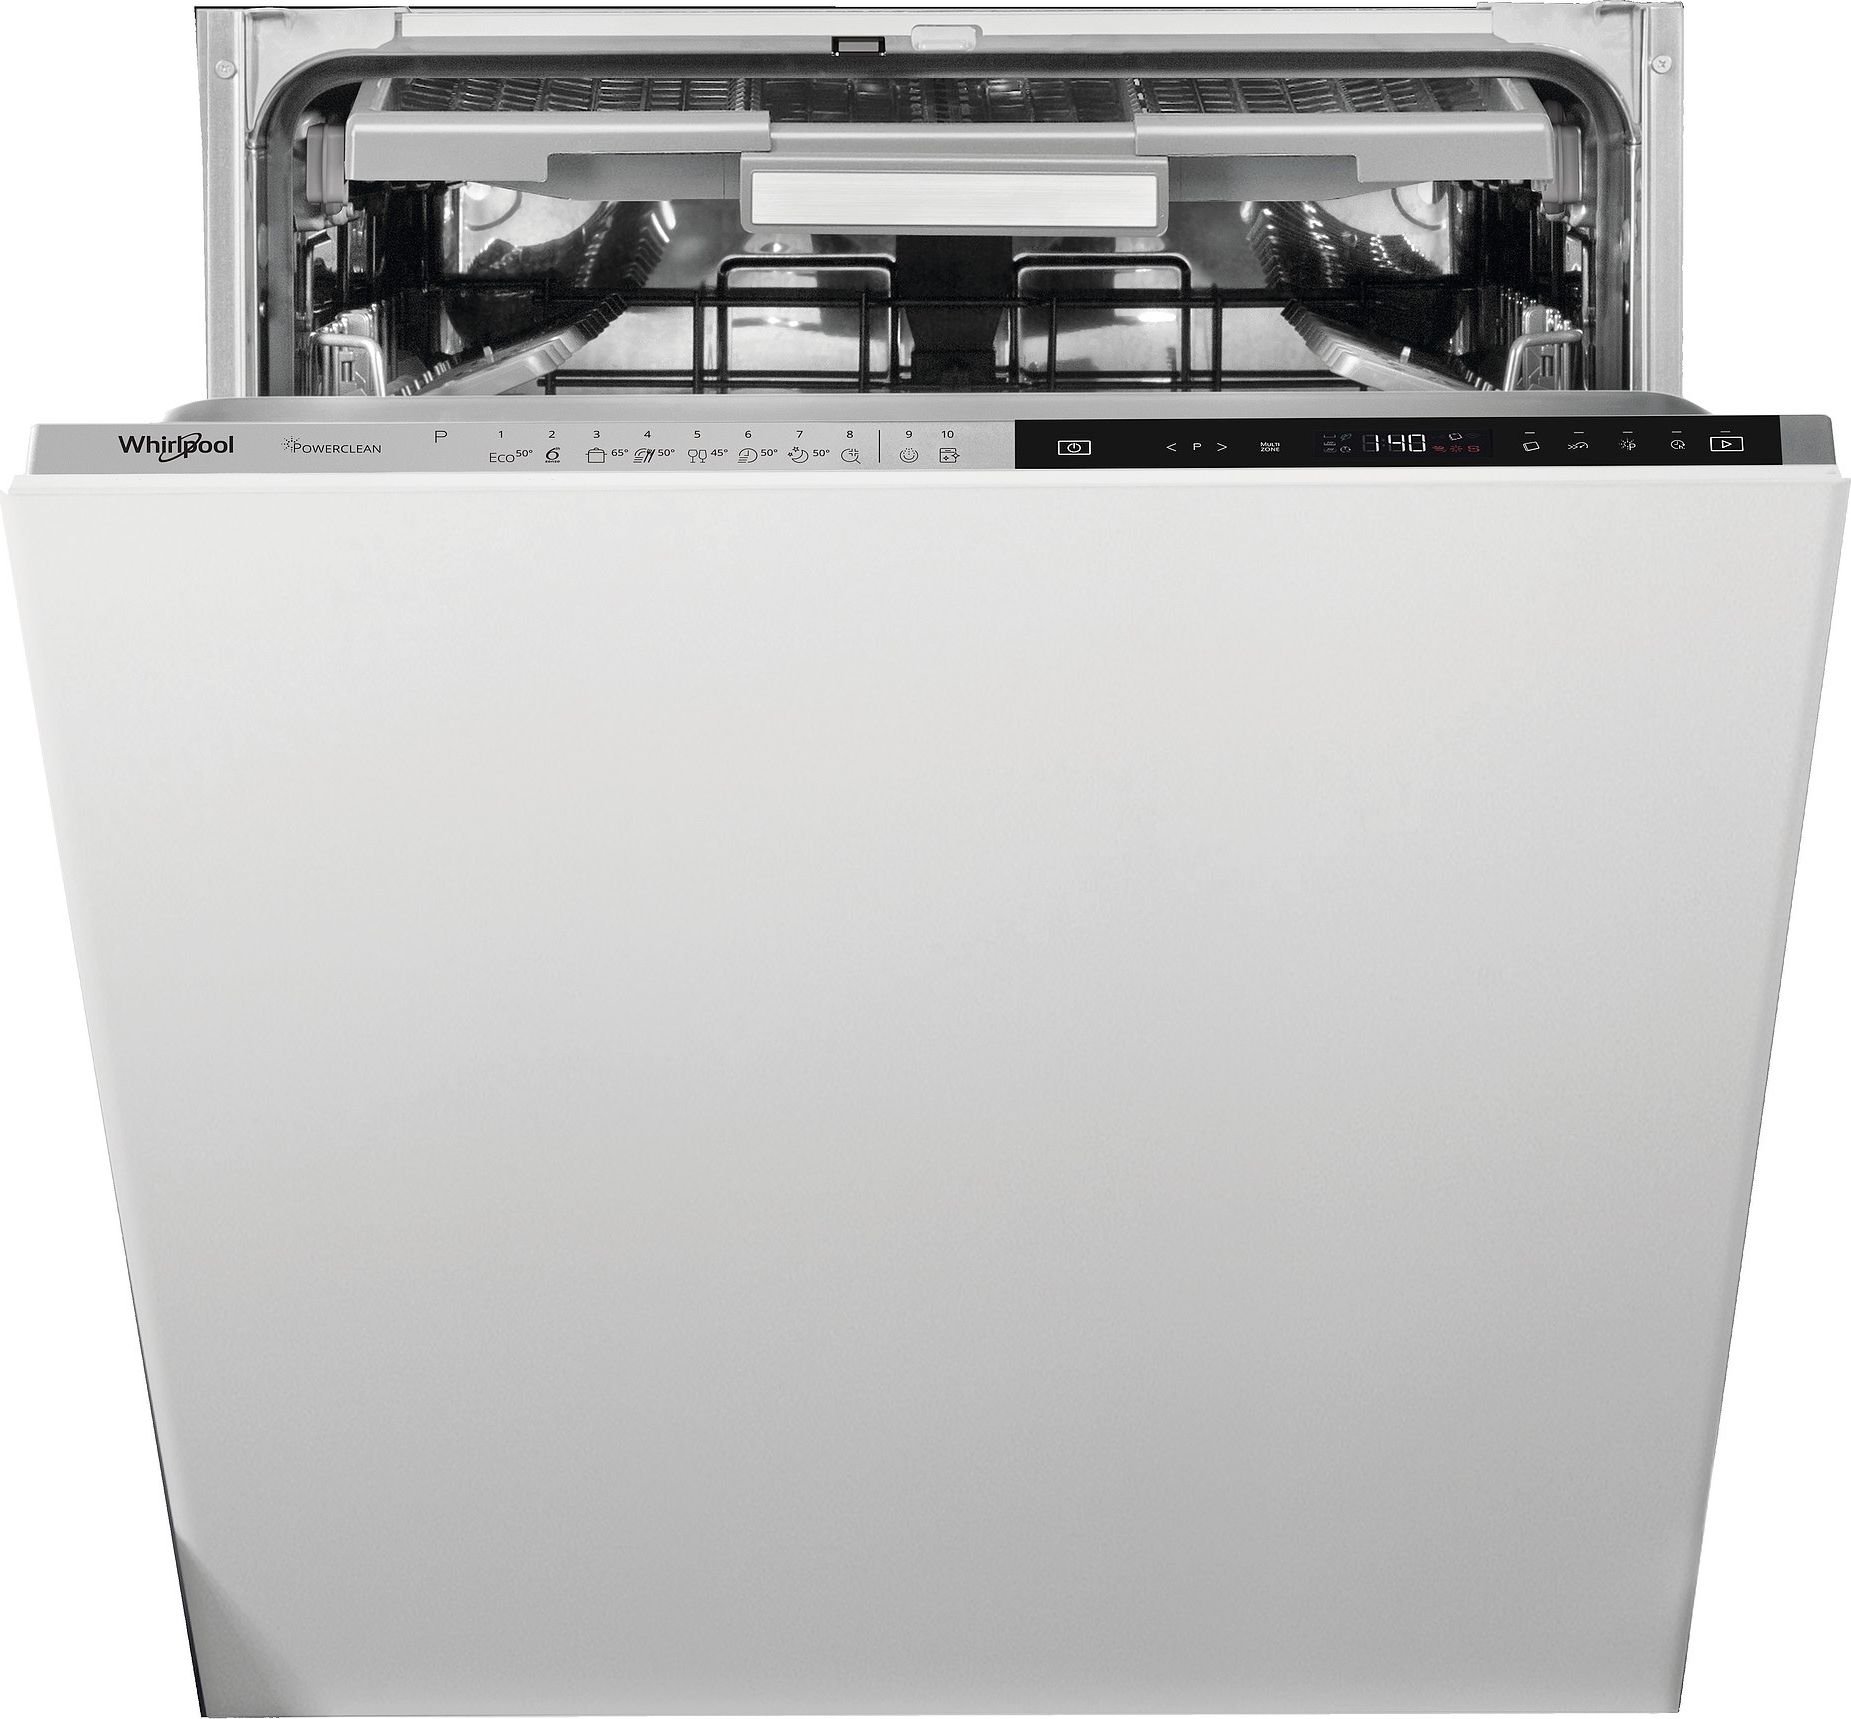 Masini de spalat vase incorporabile - Mașină de spălat vase incorporabila Whirlpool WIP 4O33PLE S,14 seturi,43 dB,59,8 cm